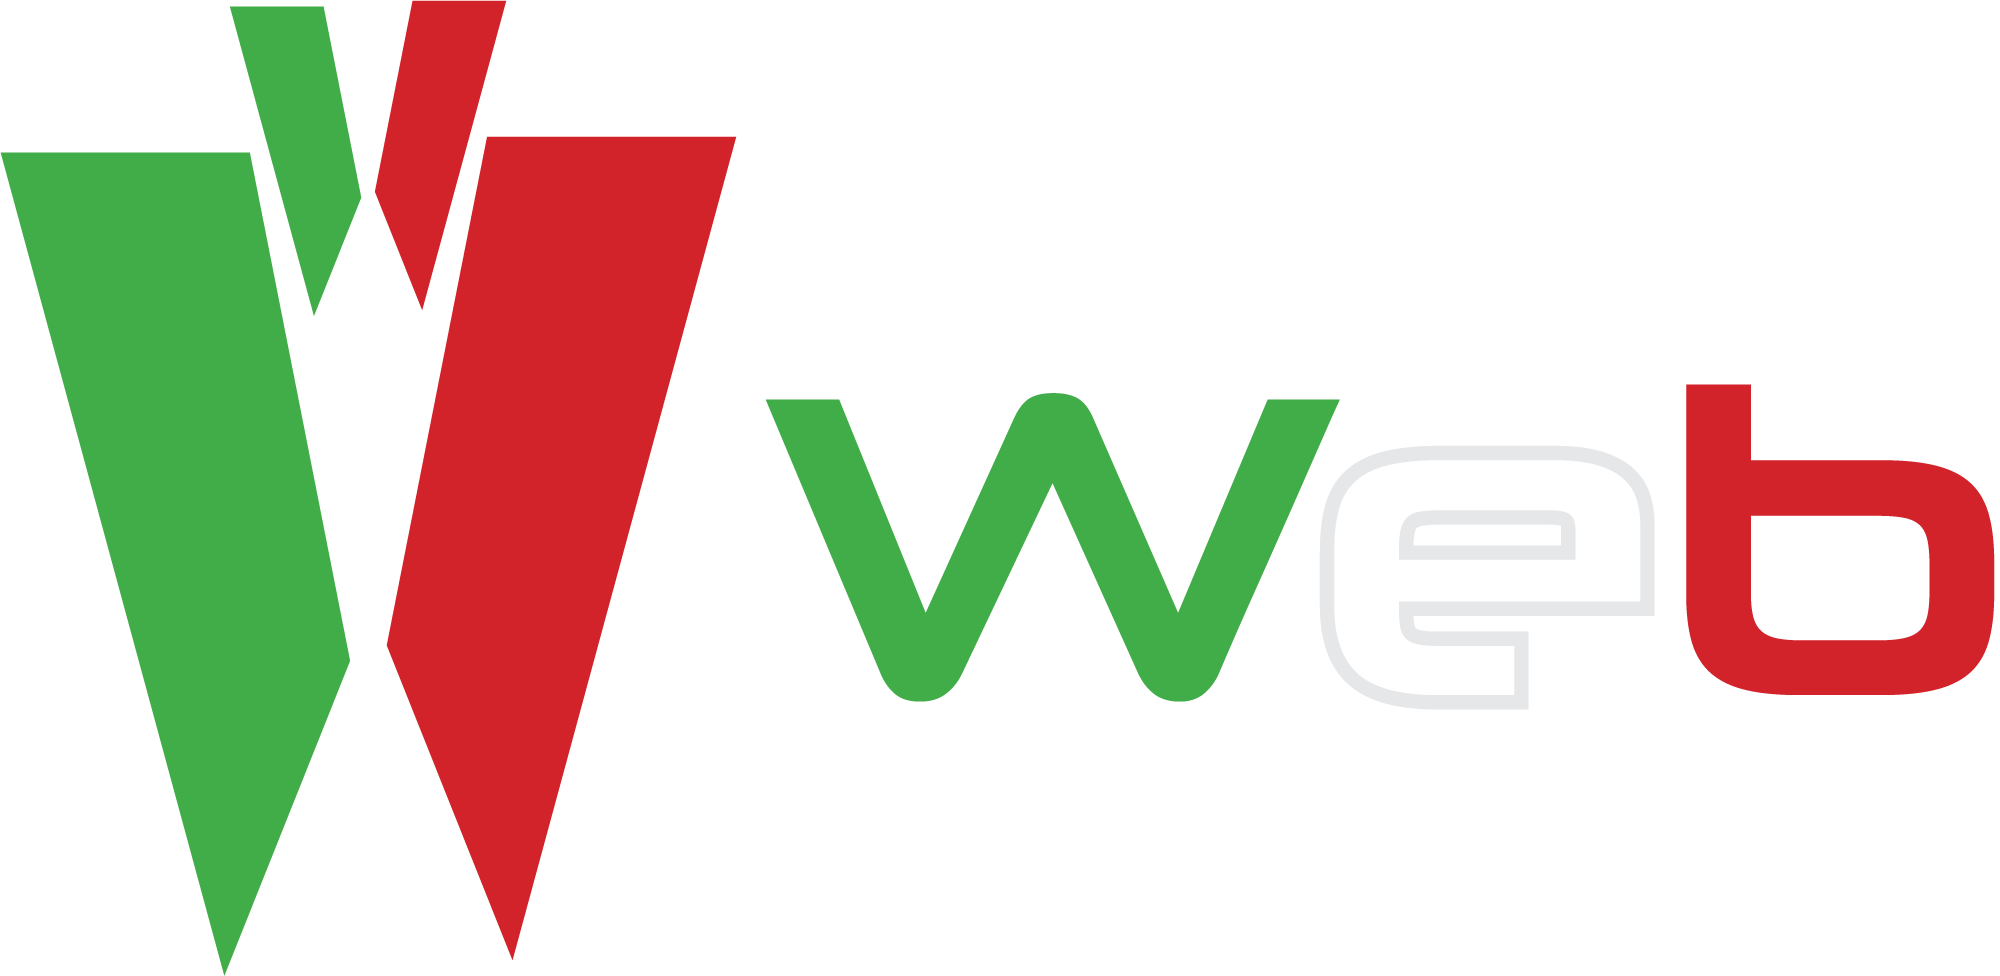 Portale Web Italiano